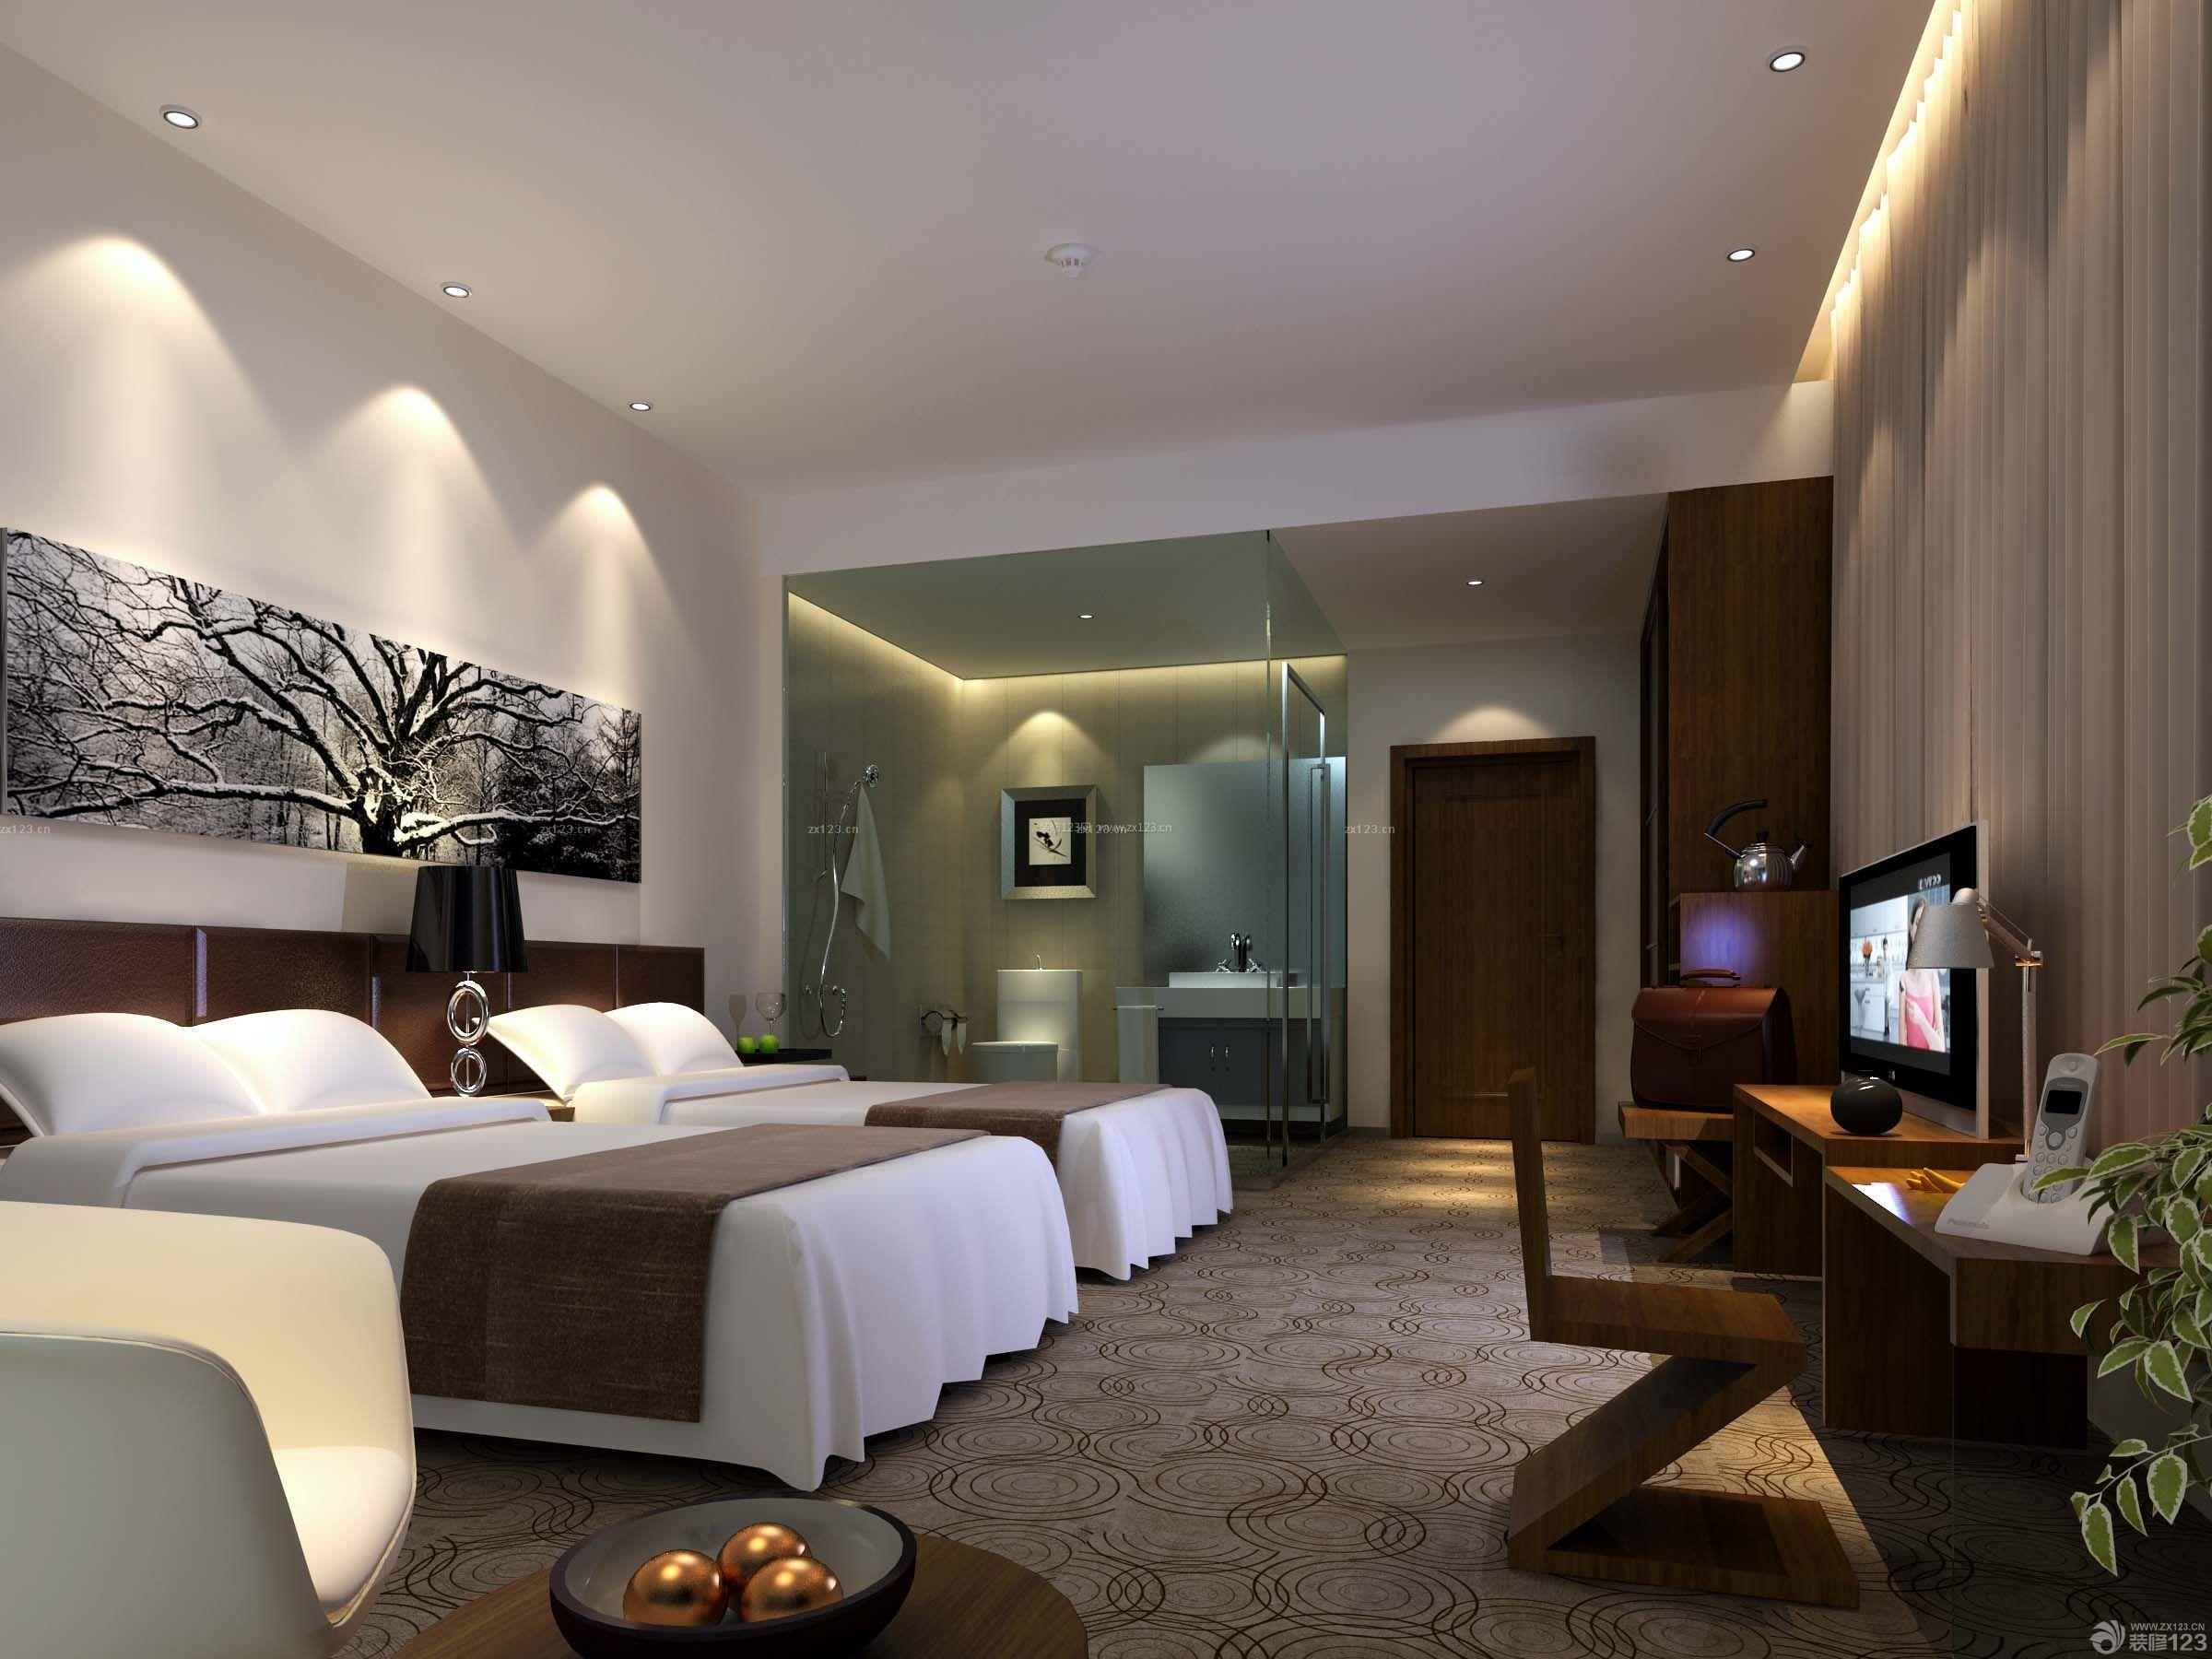 混搭五星级酒店客房照片设计图 – 设计本装修效果图